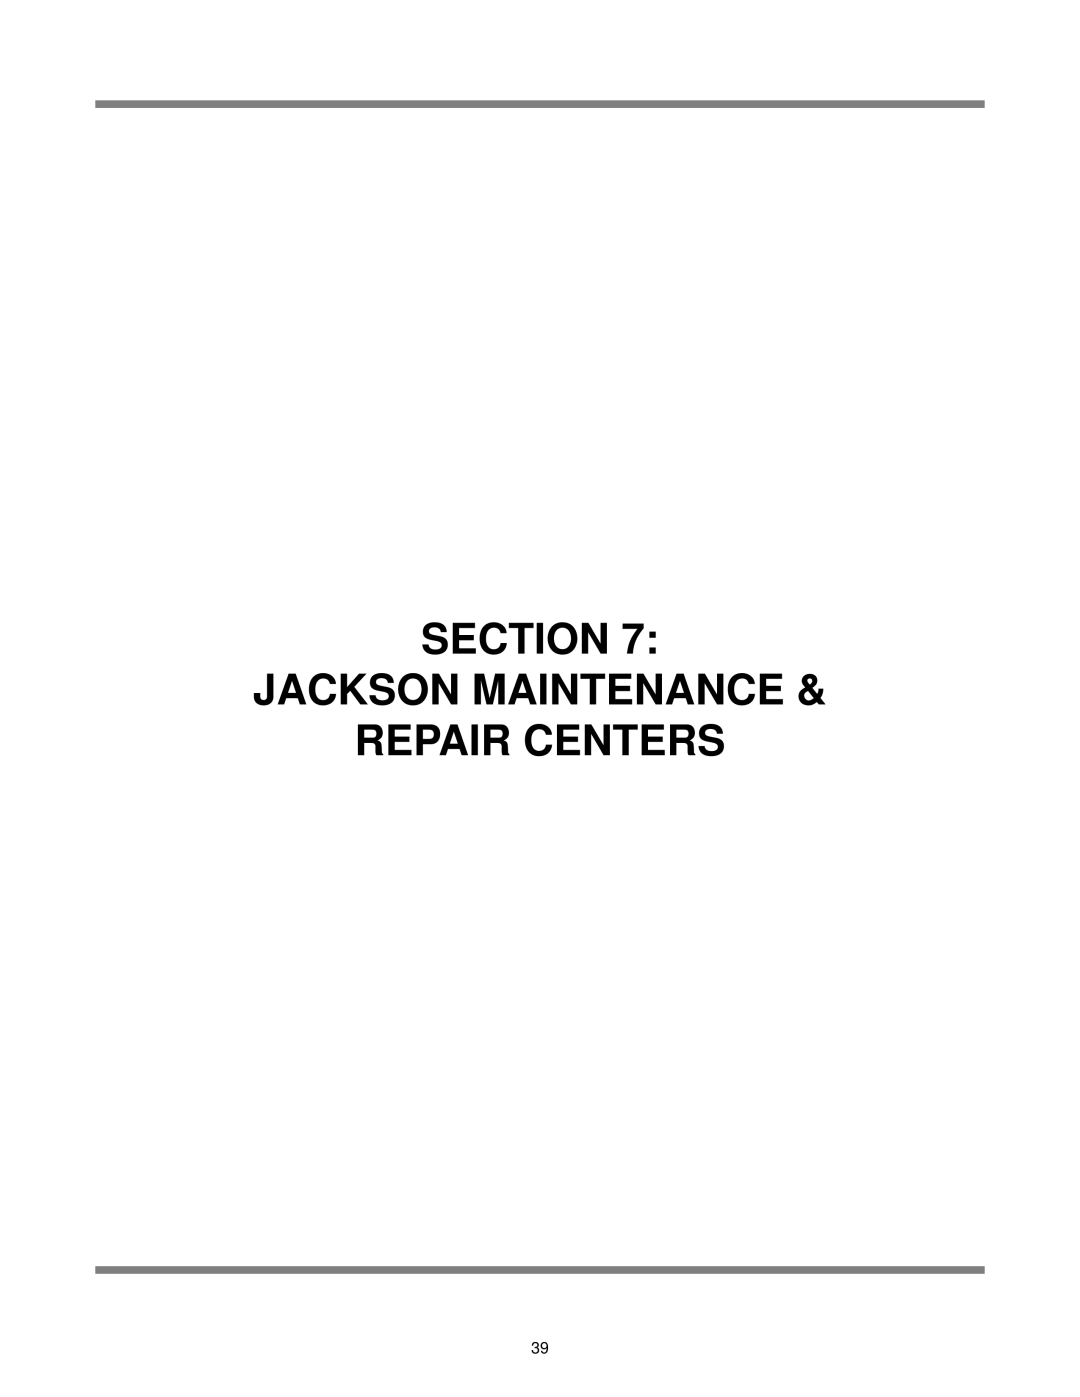 Jackson DELTA 5 D, Delta 5 technical manual Section Jackson Maintenance Repair Centers 